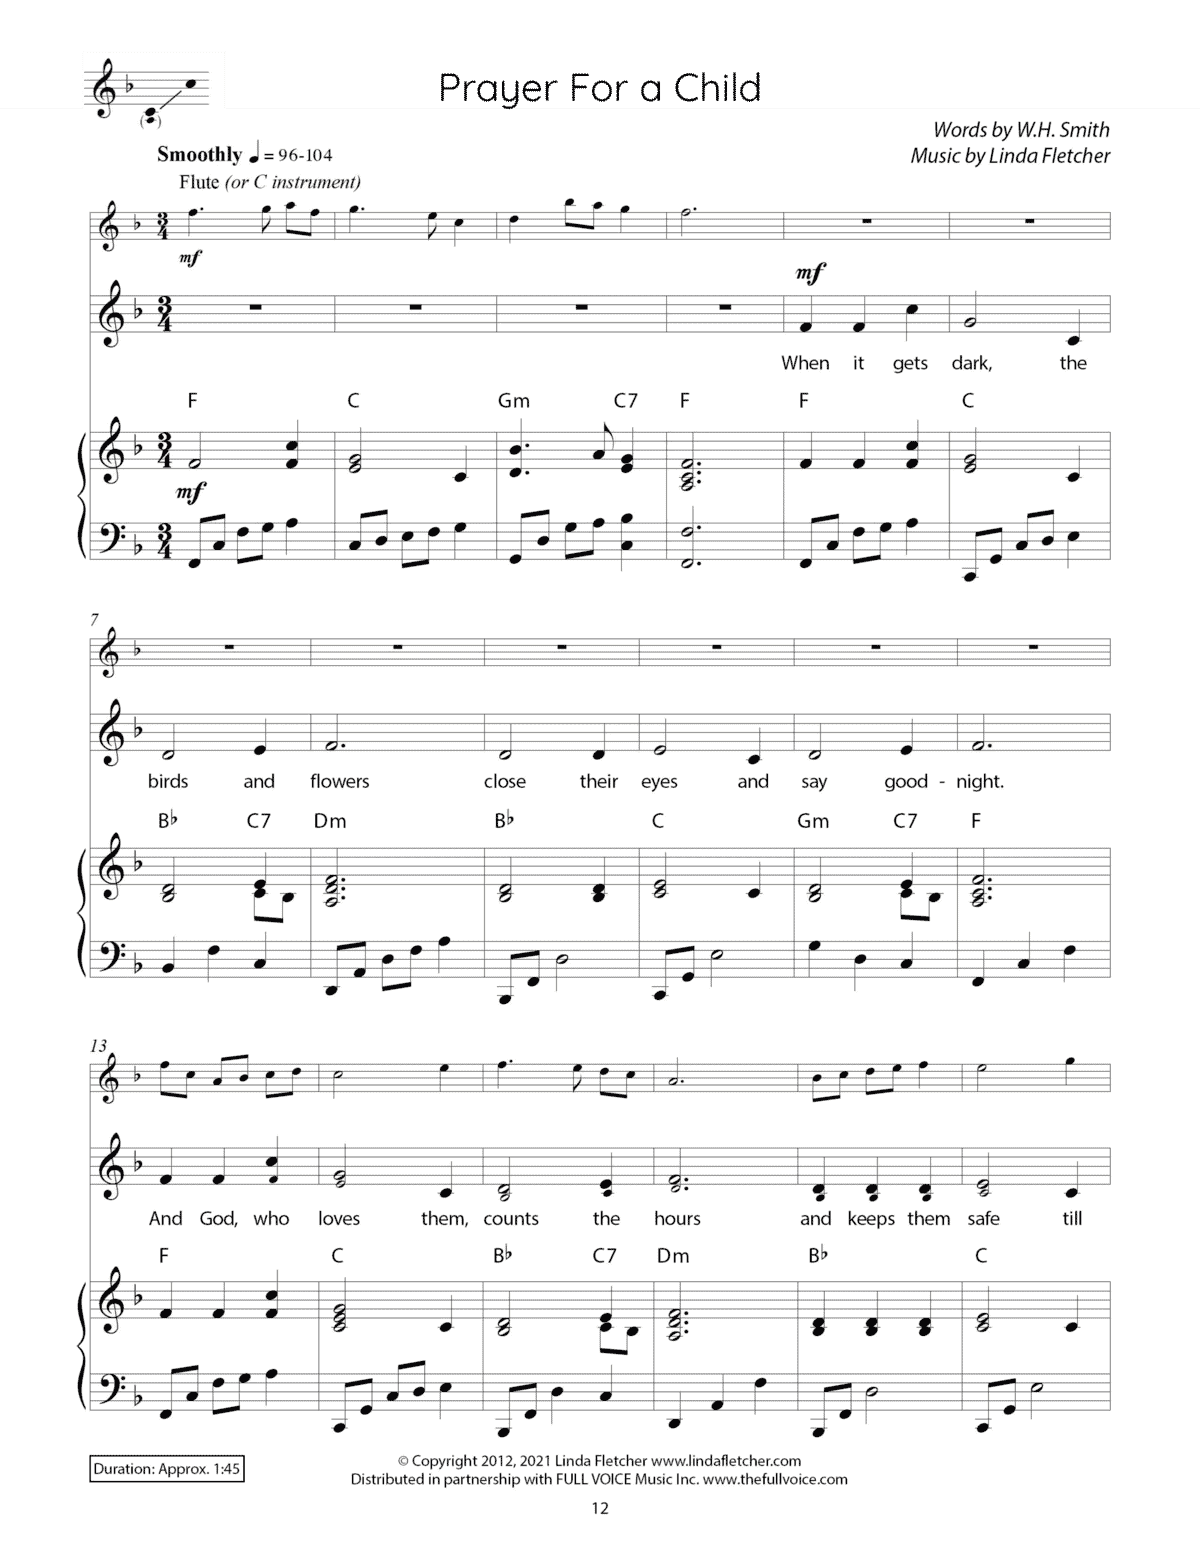 Children’s Songs of Praise (PDF)